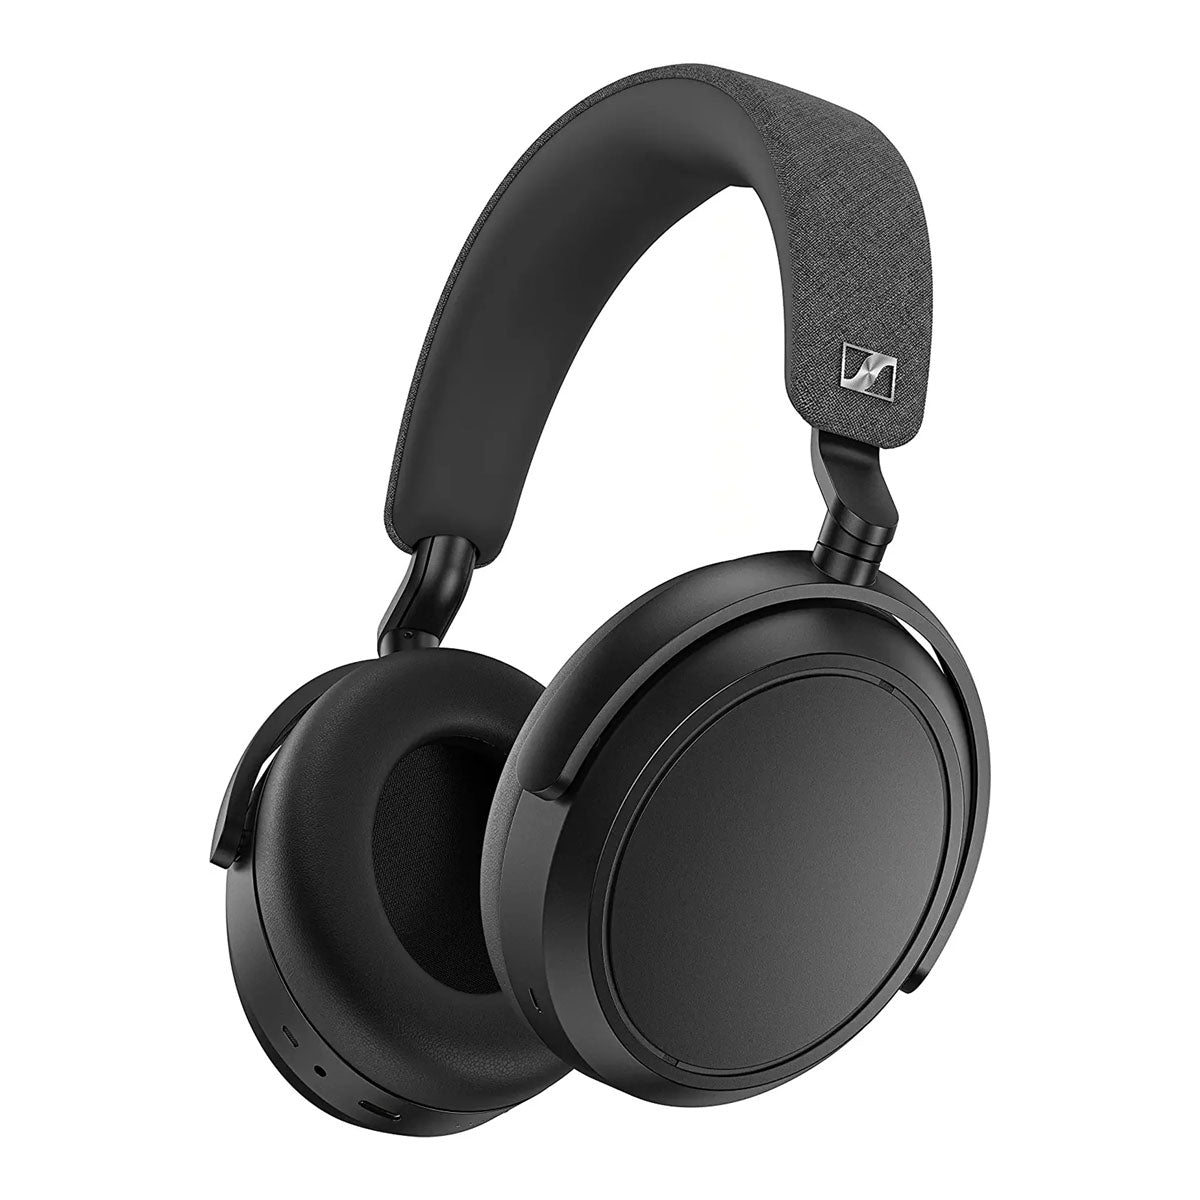 Sennheiser MOMENTUM 4 Noise-Cancelling Wireless Over-Ear Headphones - Black - B-Stock